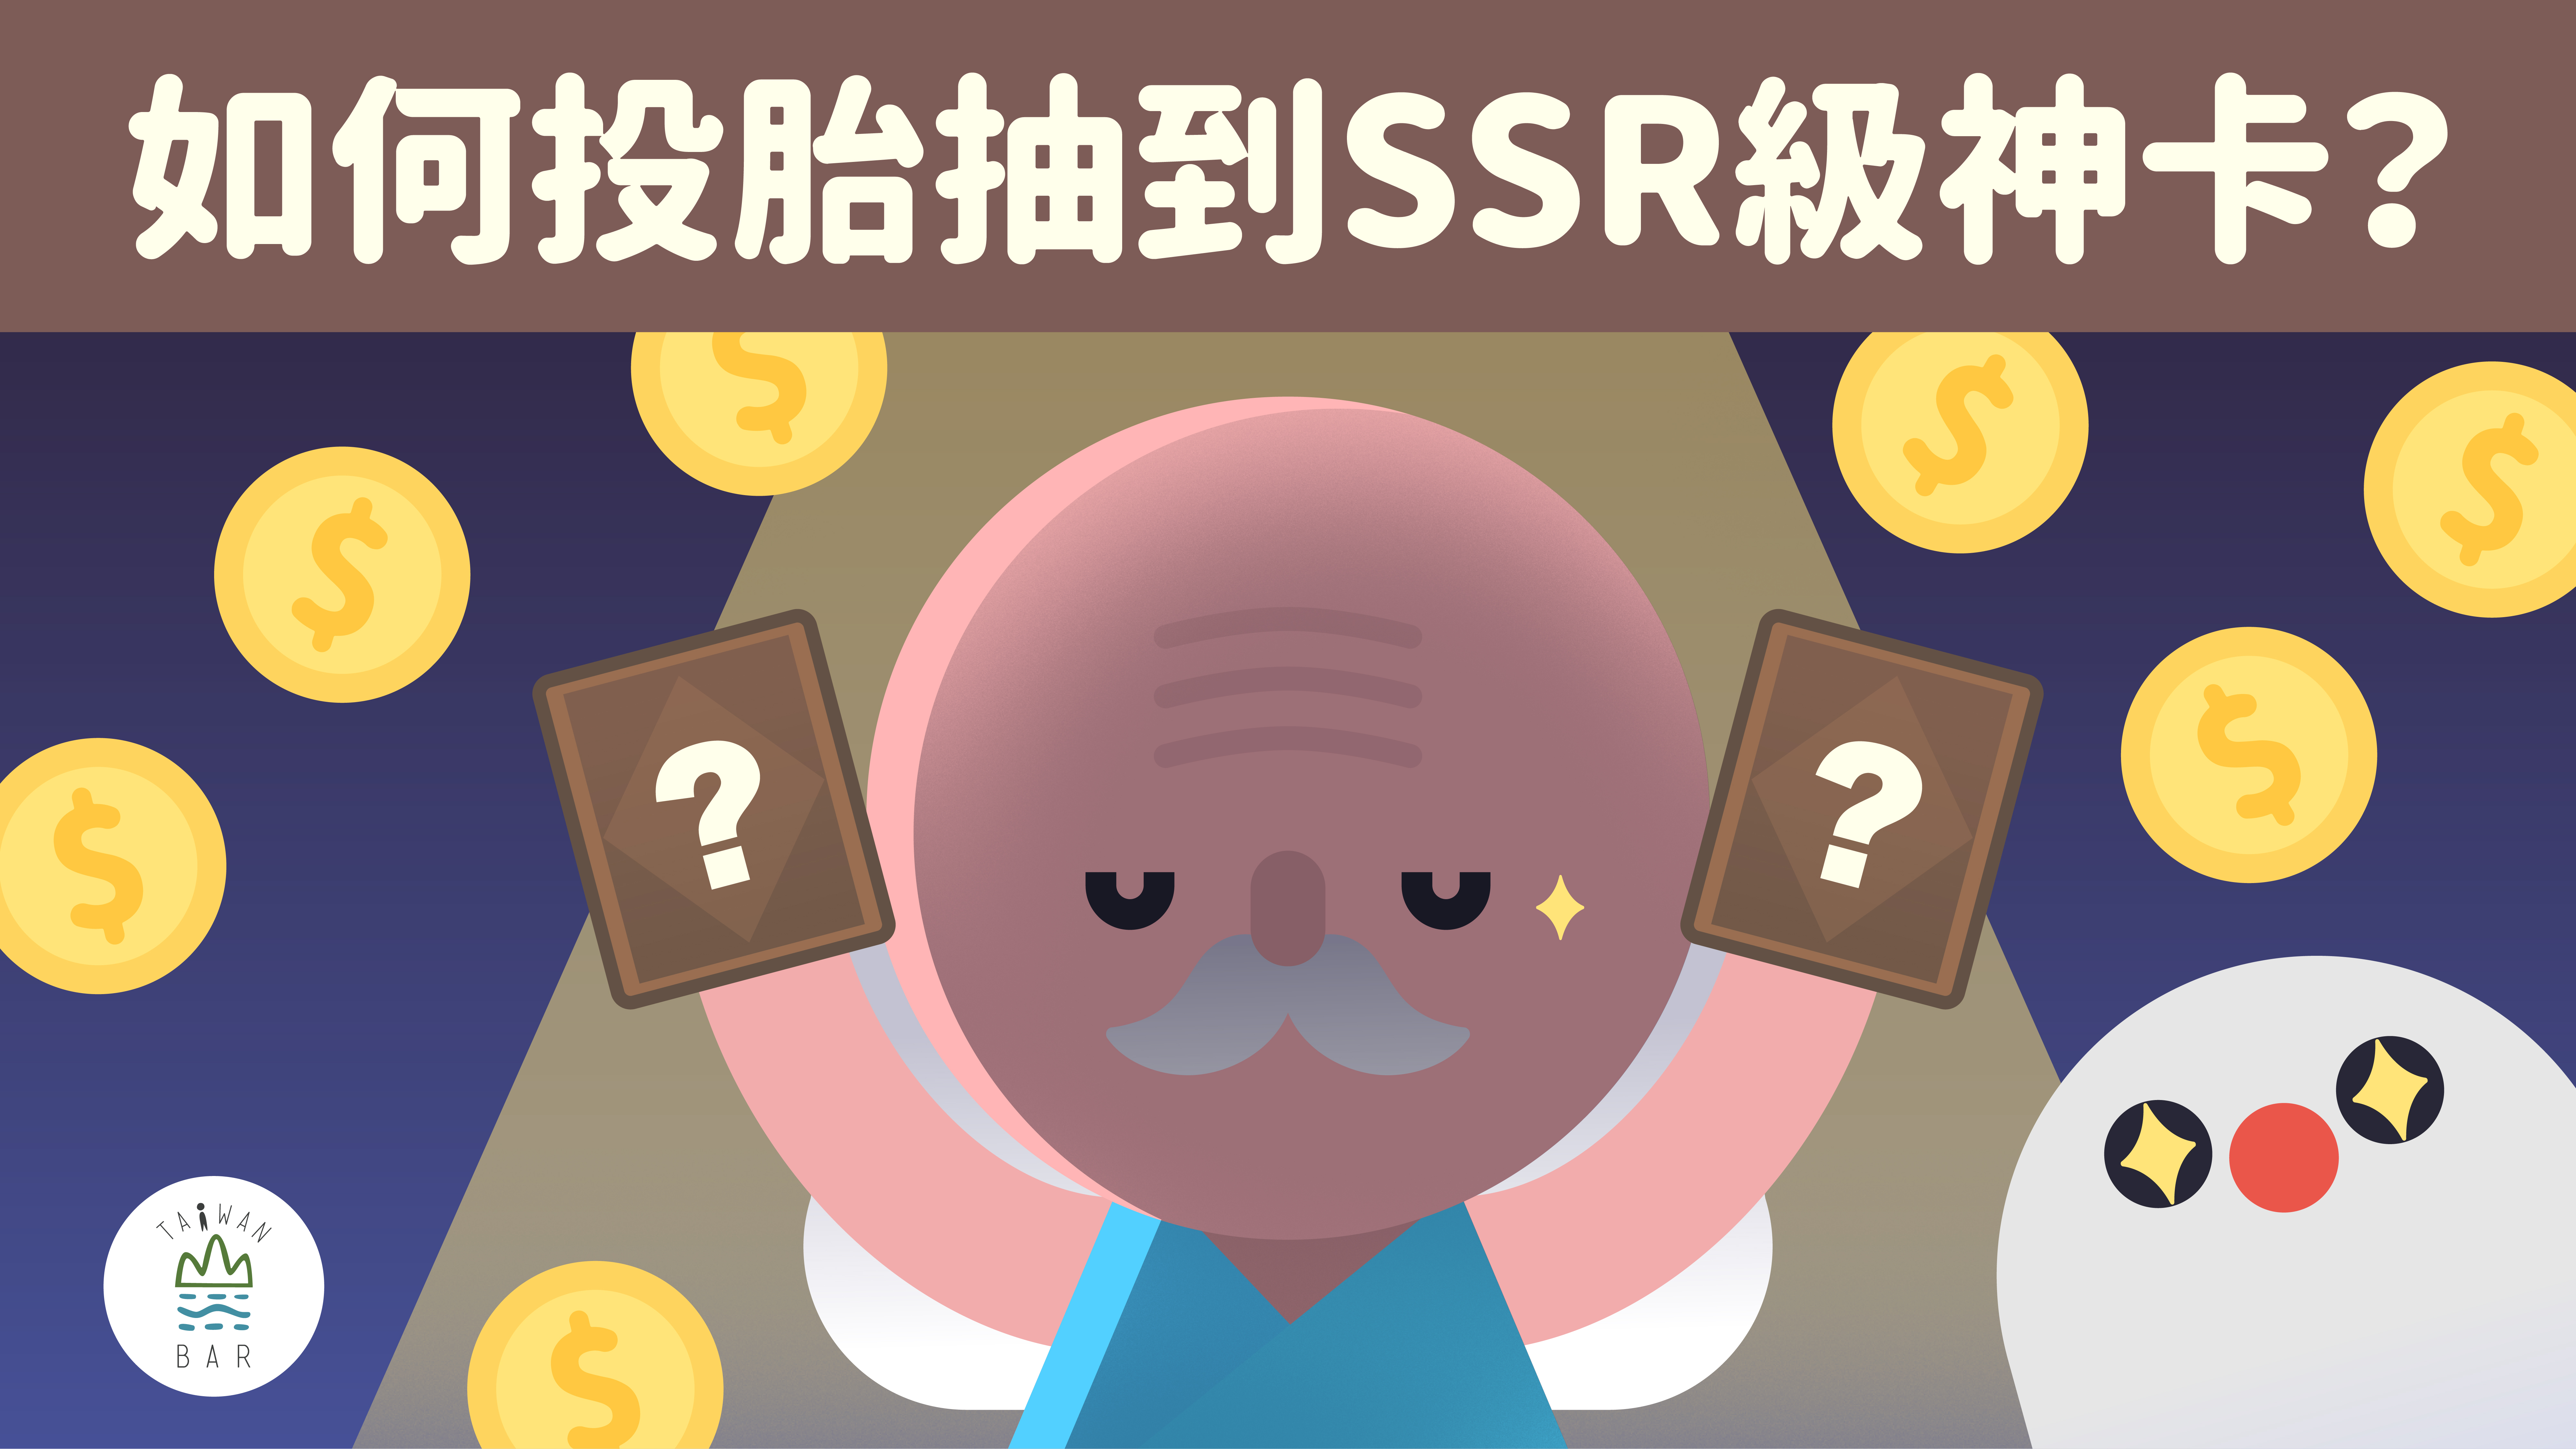 臺灣吧 X 經濟部工業局 | 如何投胎抽到SSR 級神卡？